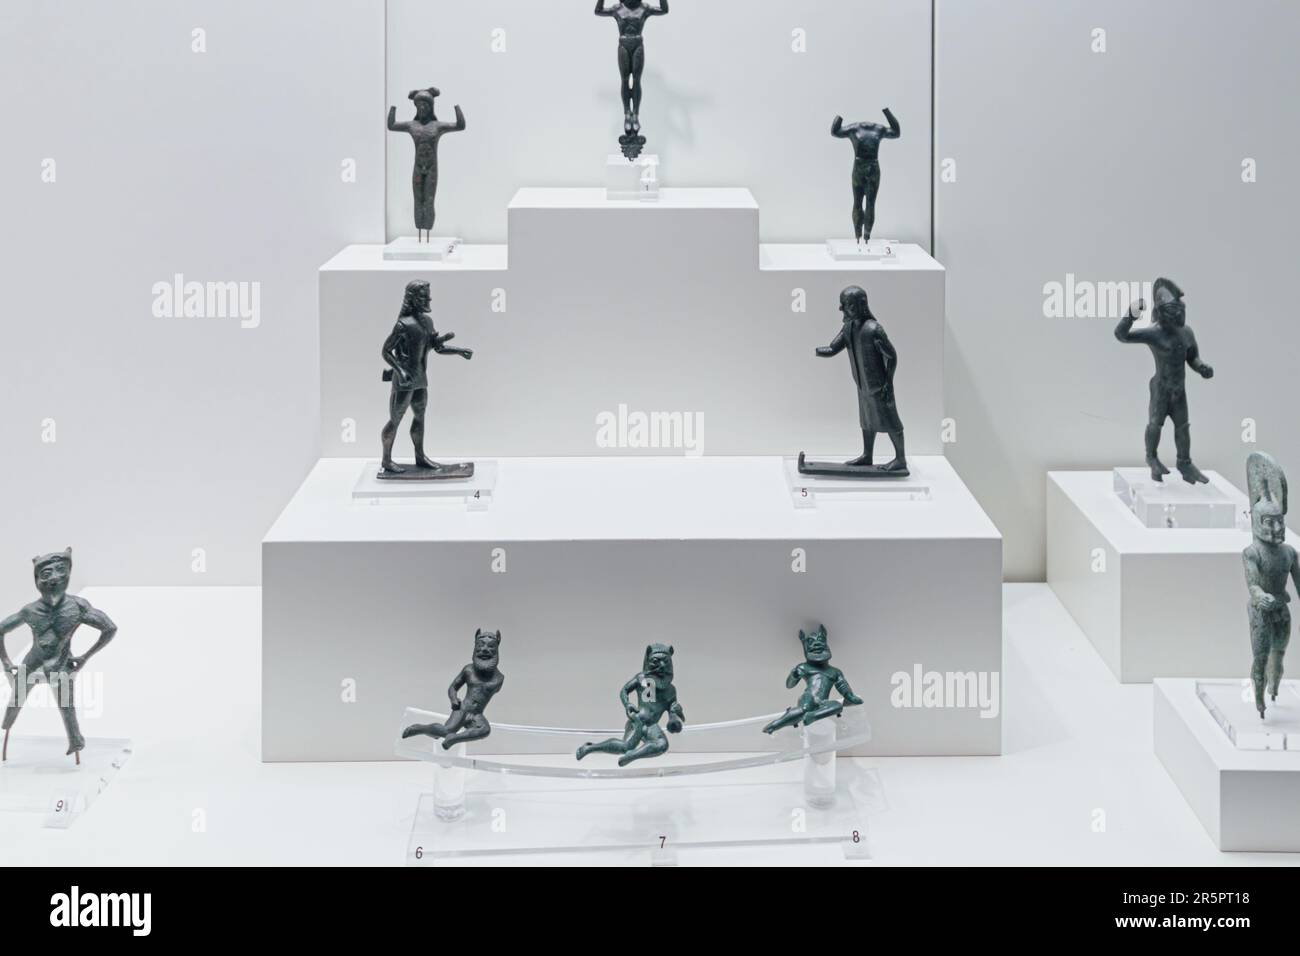 Esculturas y artefactos de la mitología griega antigua Foto de stock